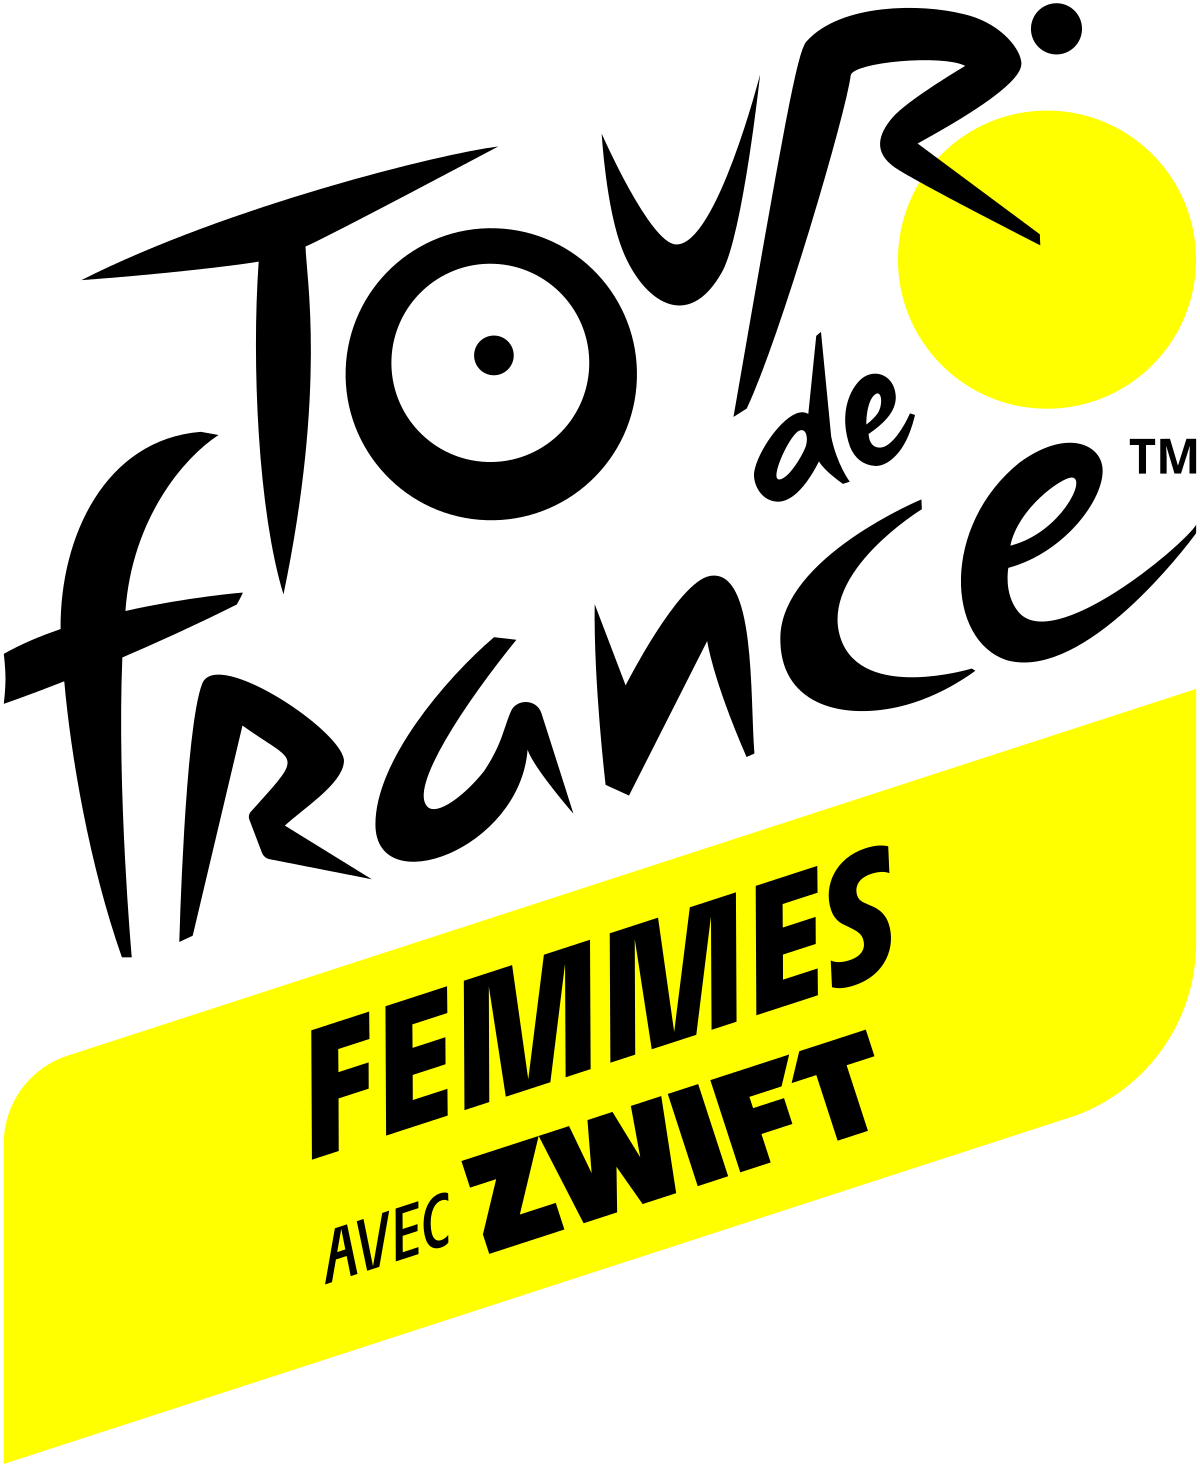 logo Tour de France